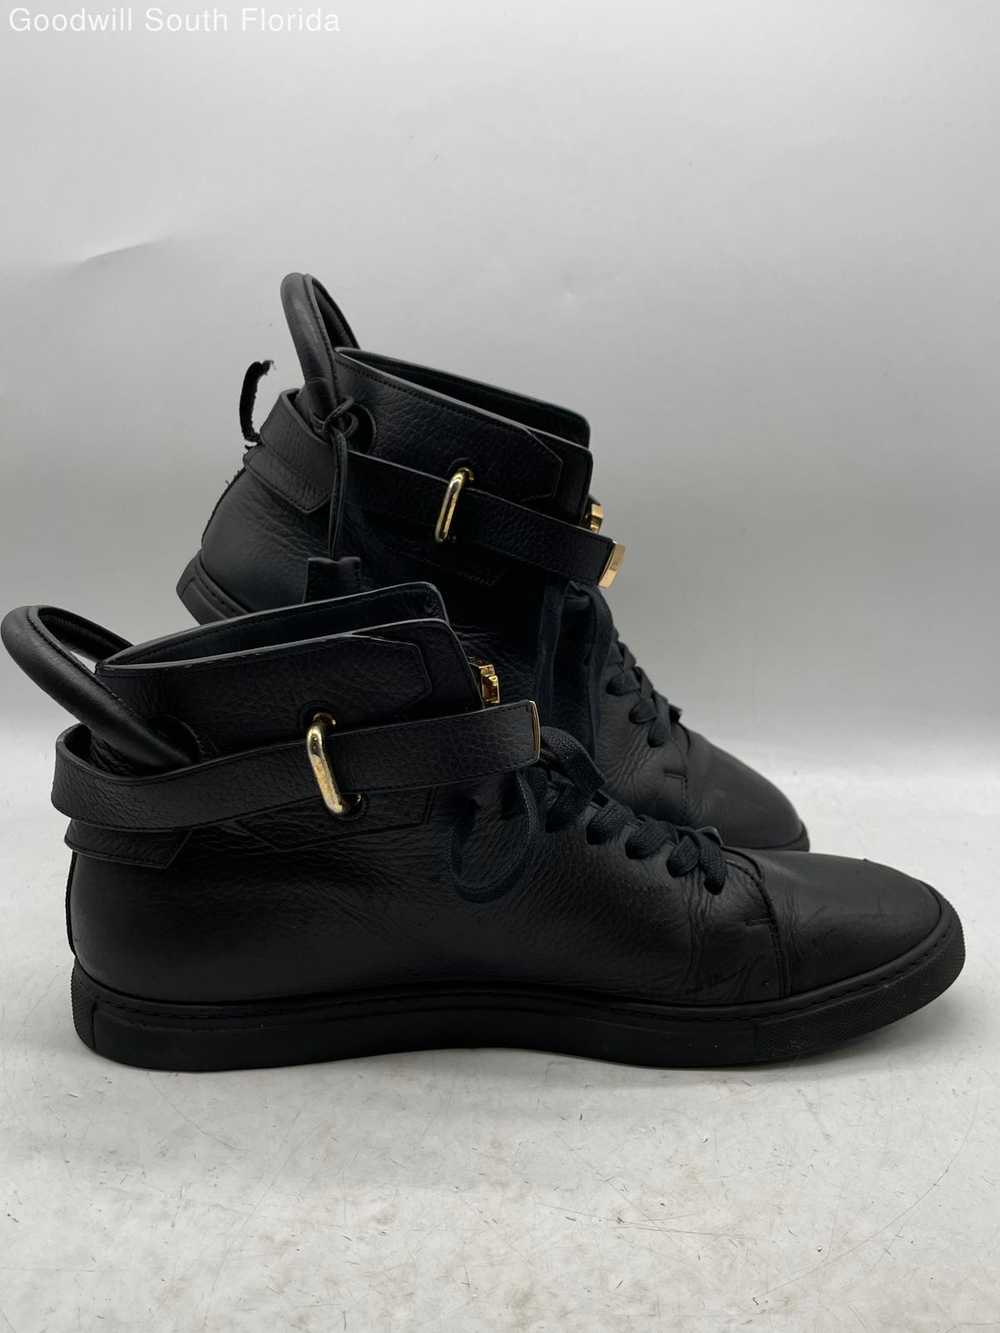 Buscemi Mens Shoes Black Size 13 - image 2